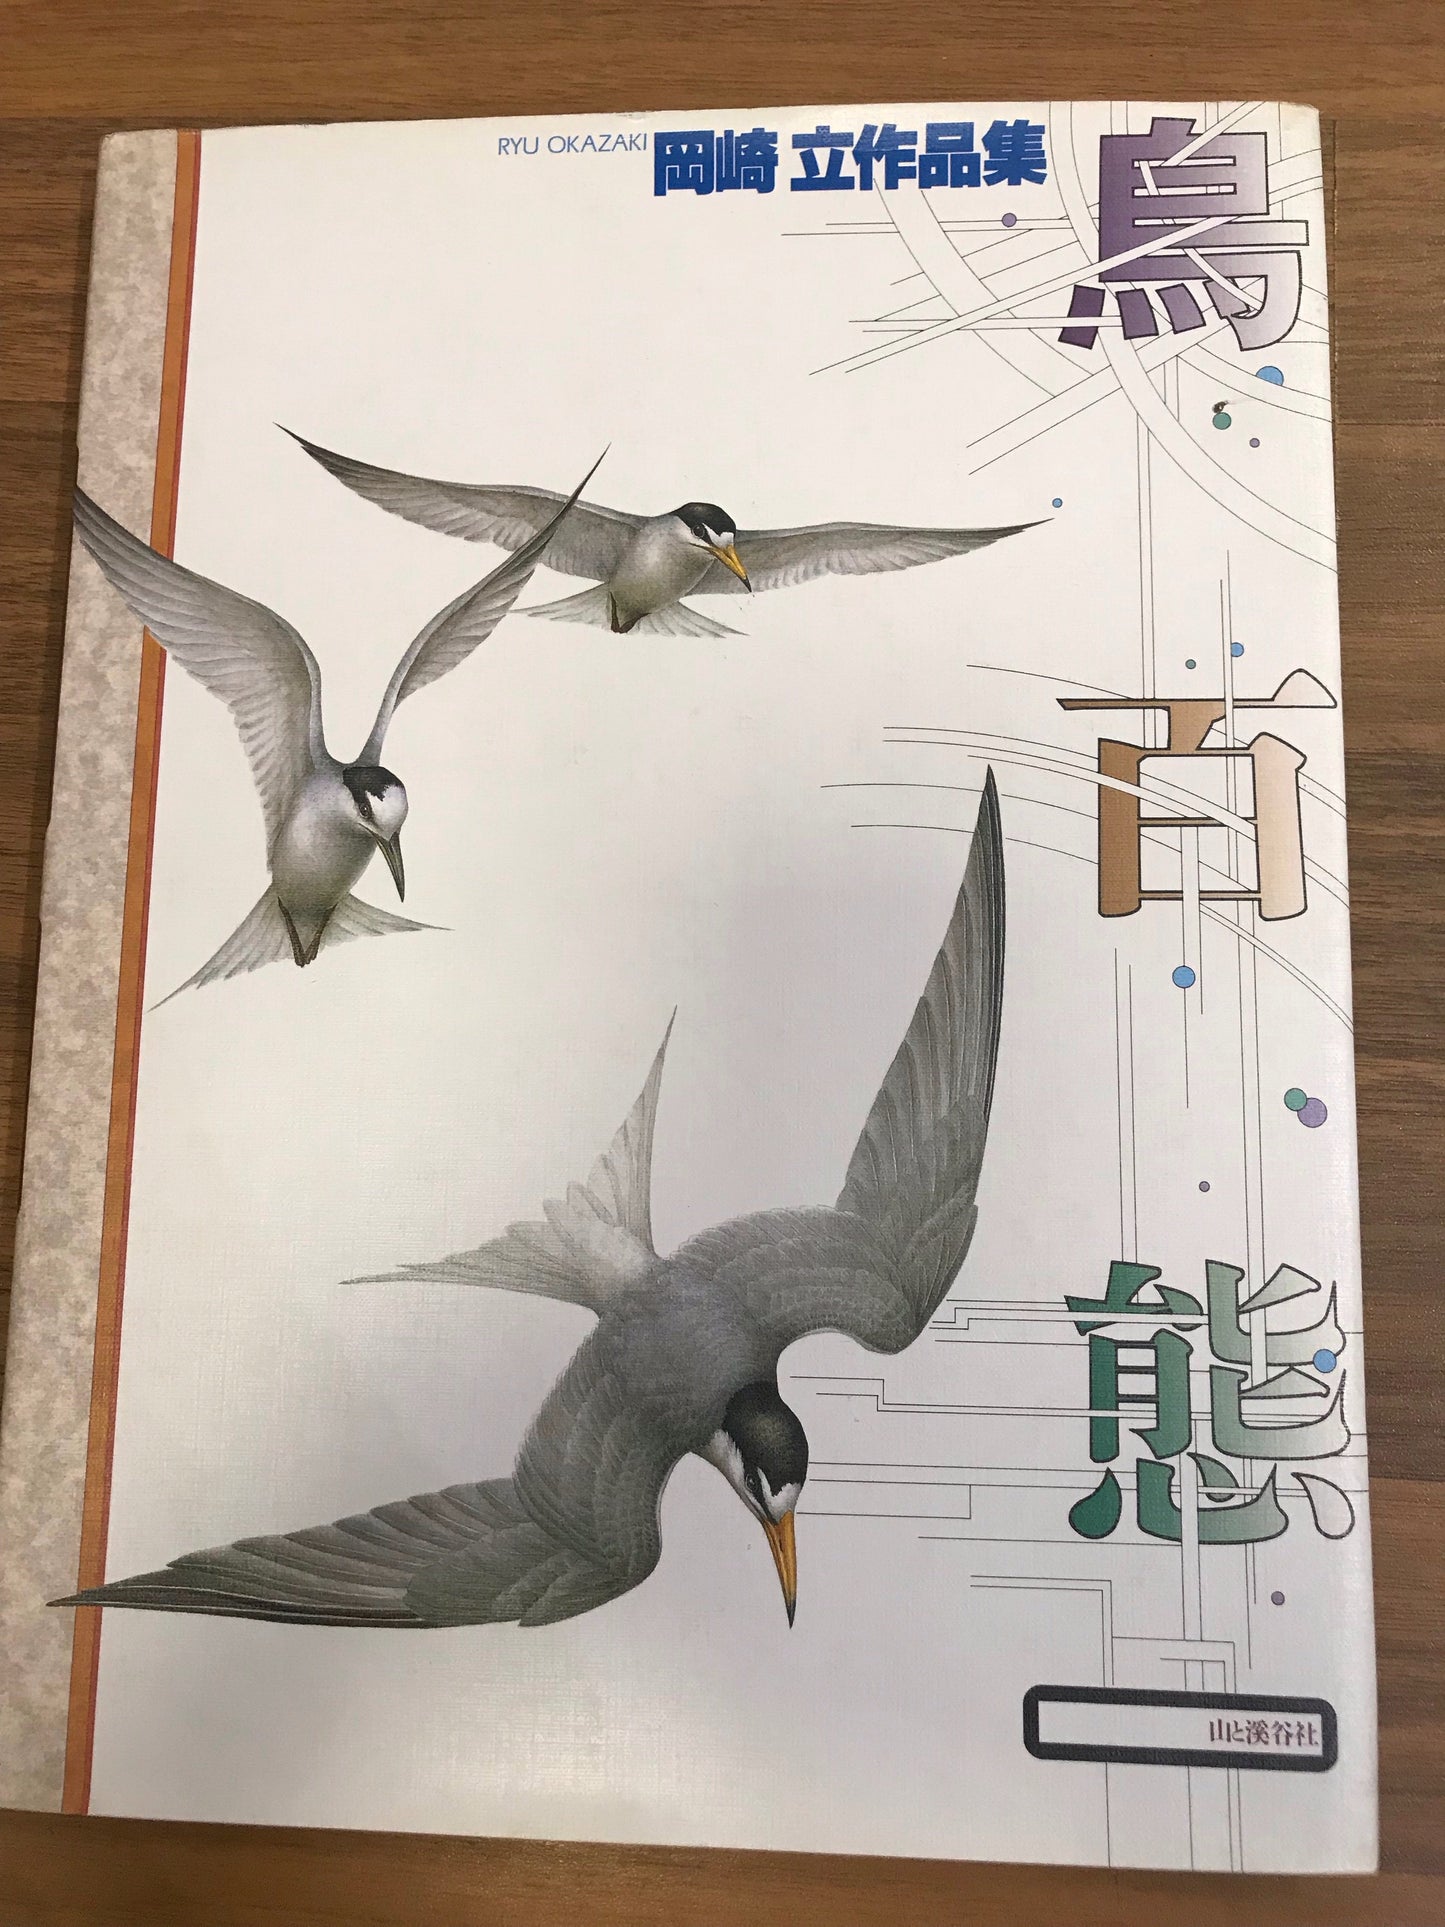 Ryu Okazaki Birds